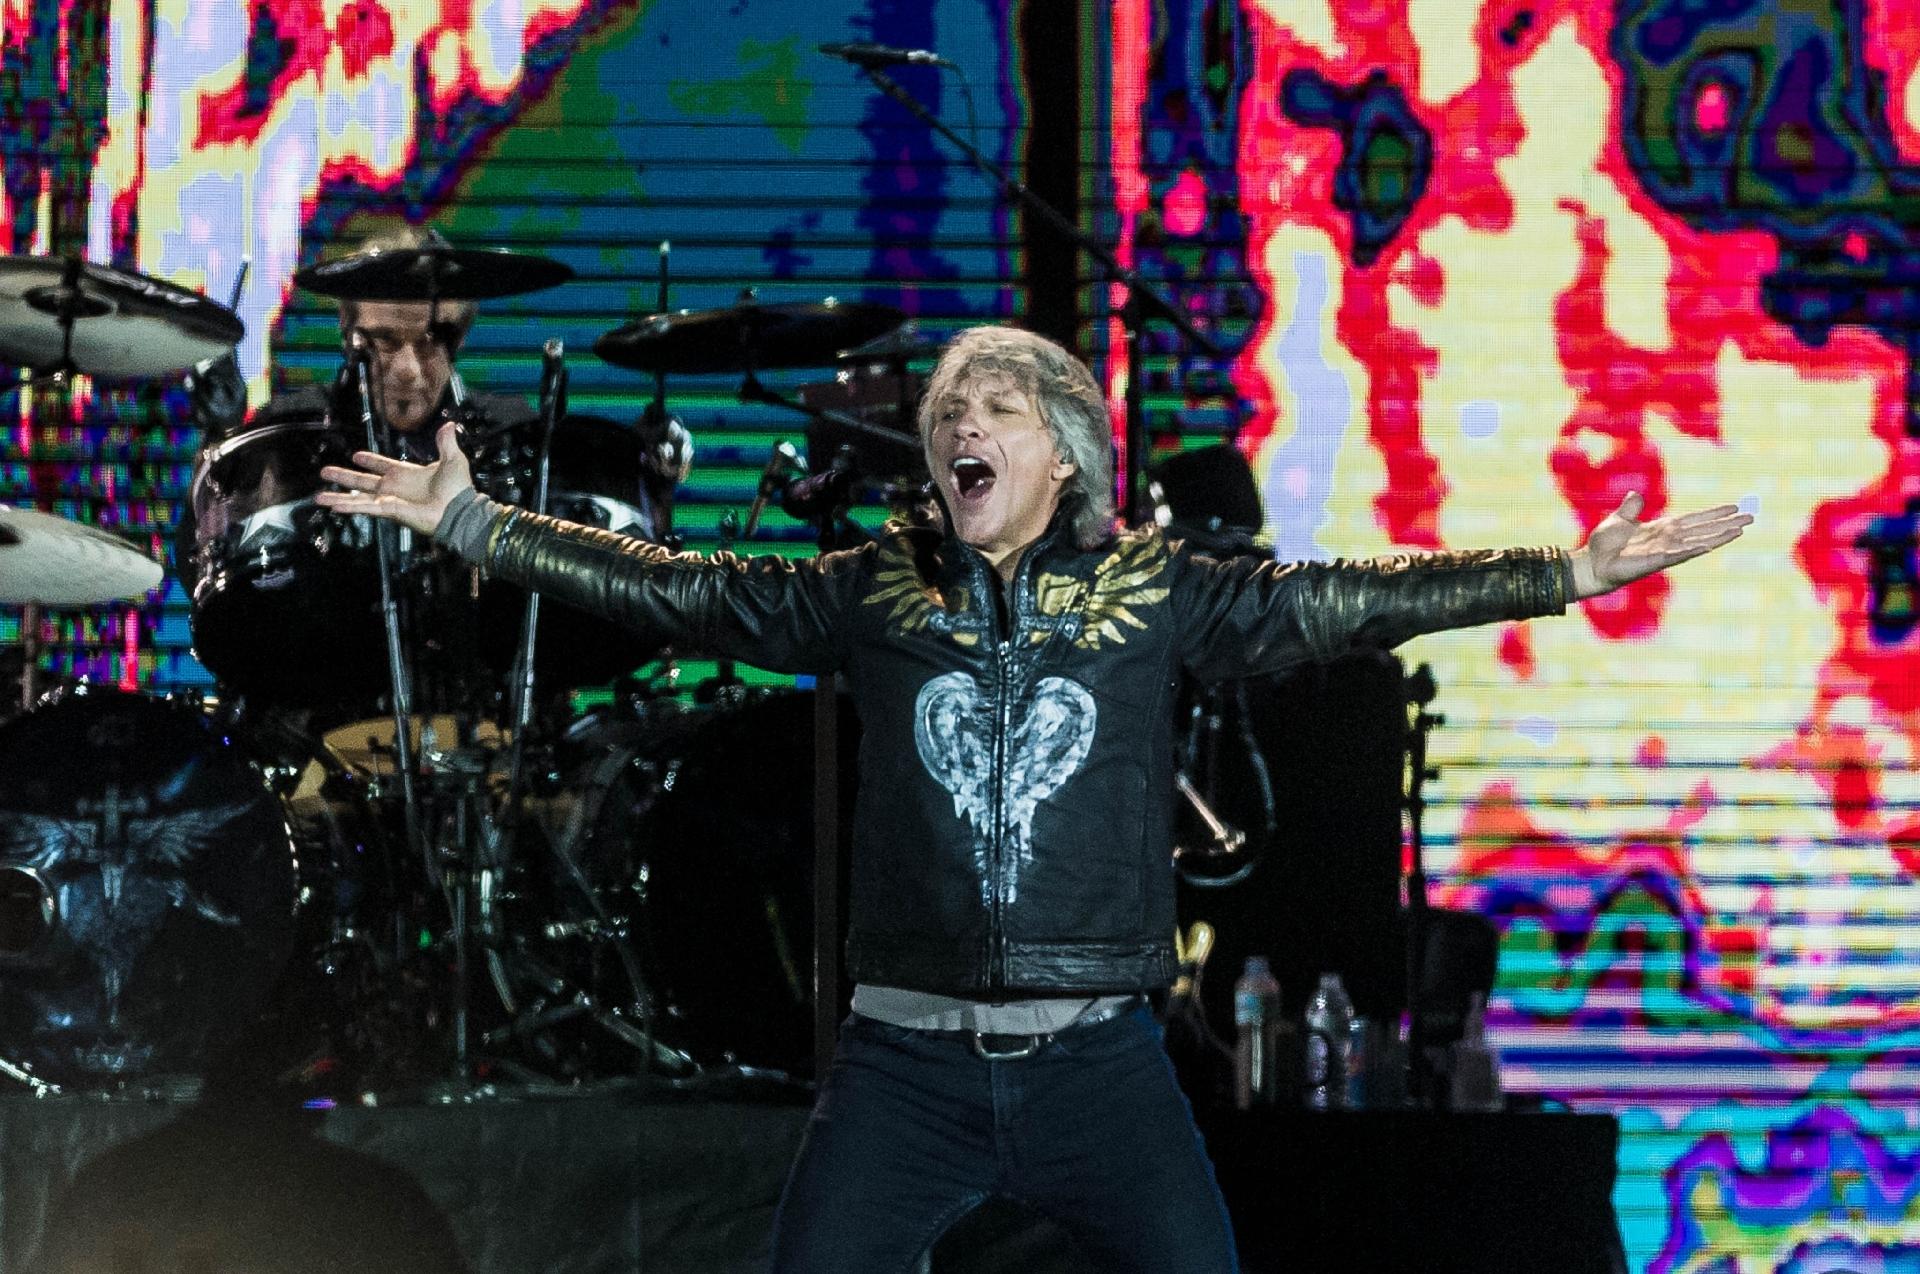 Show do Bon Jovi em SP Reinventado, líder da banda mostra que não